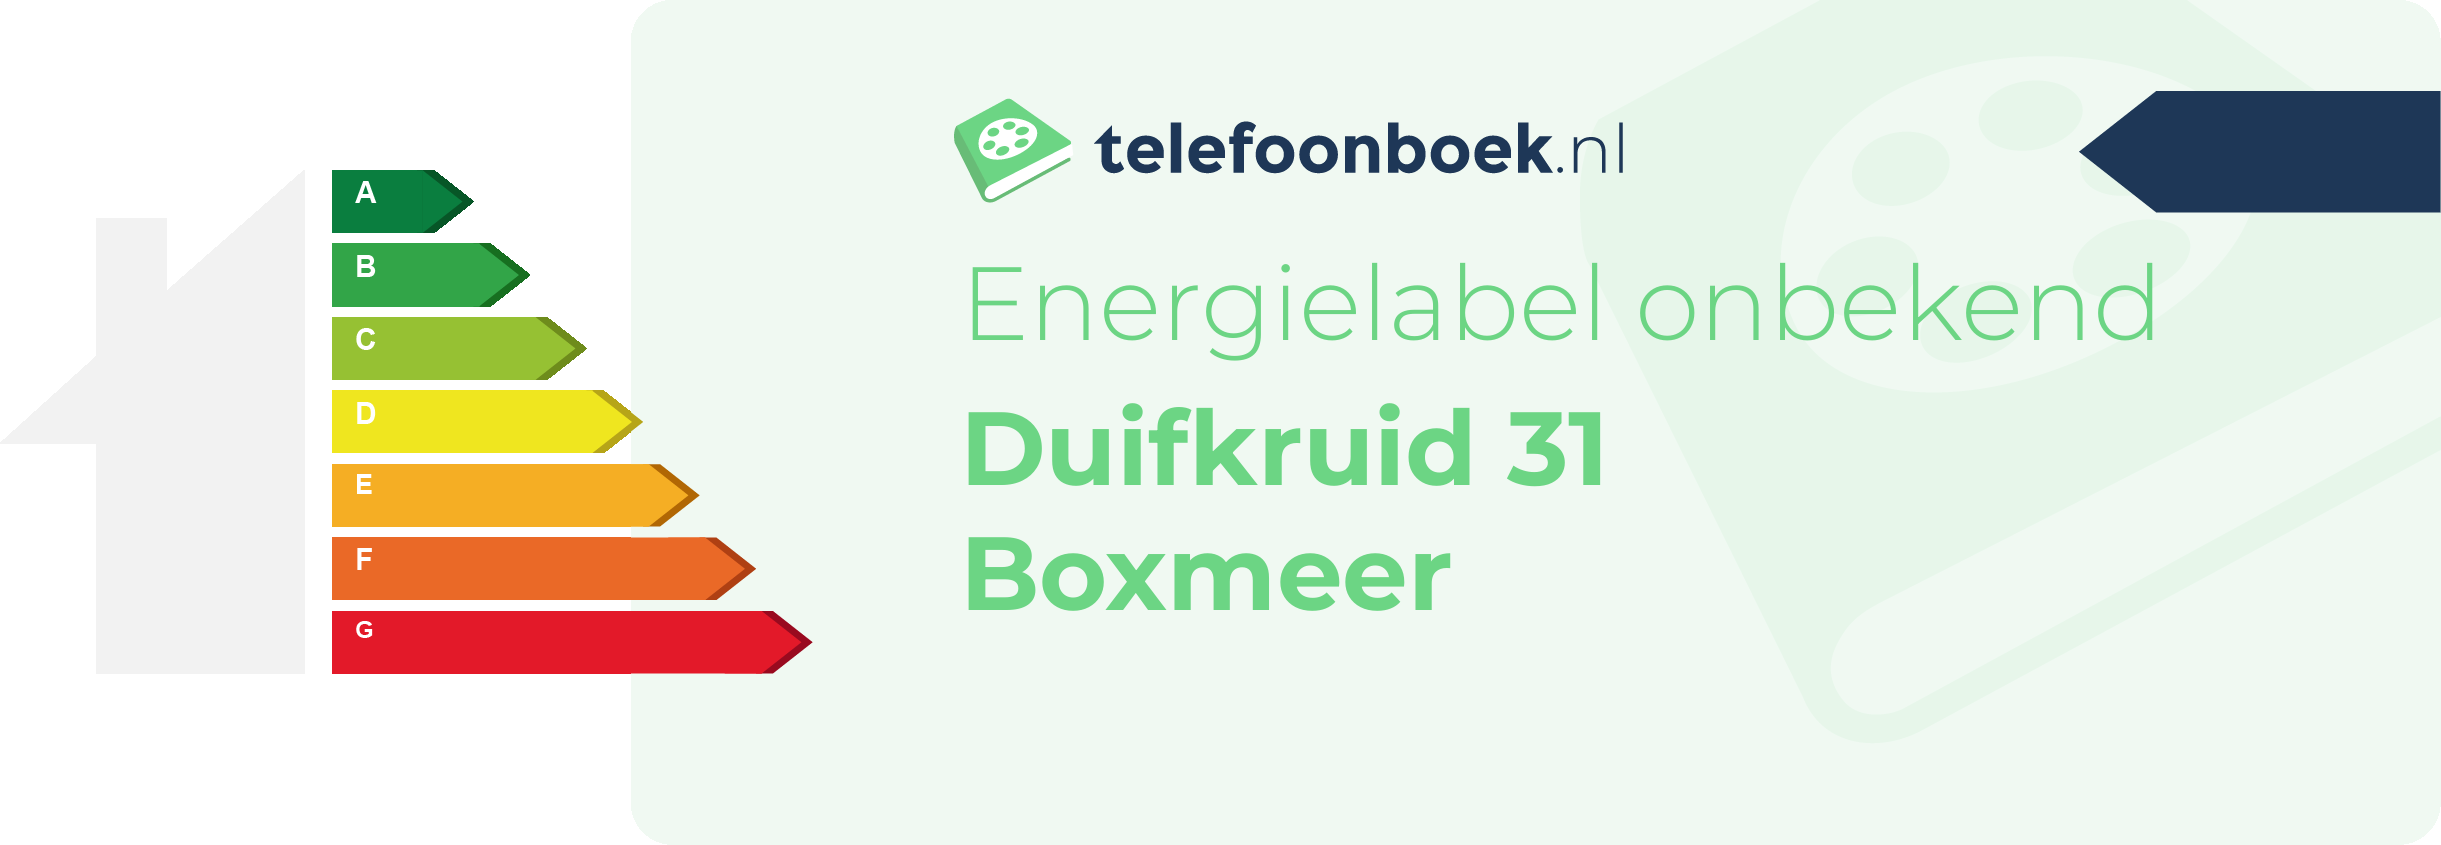 Energielabel Duifkruid 31 Boxmeer